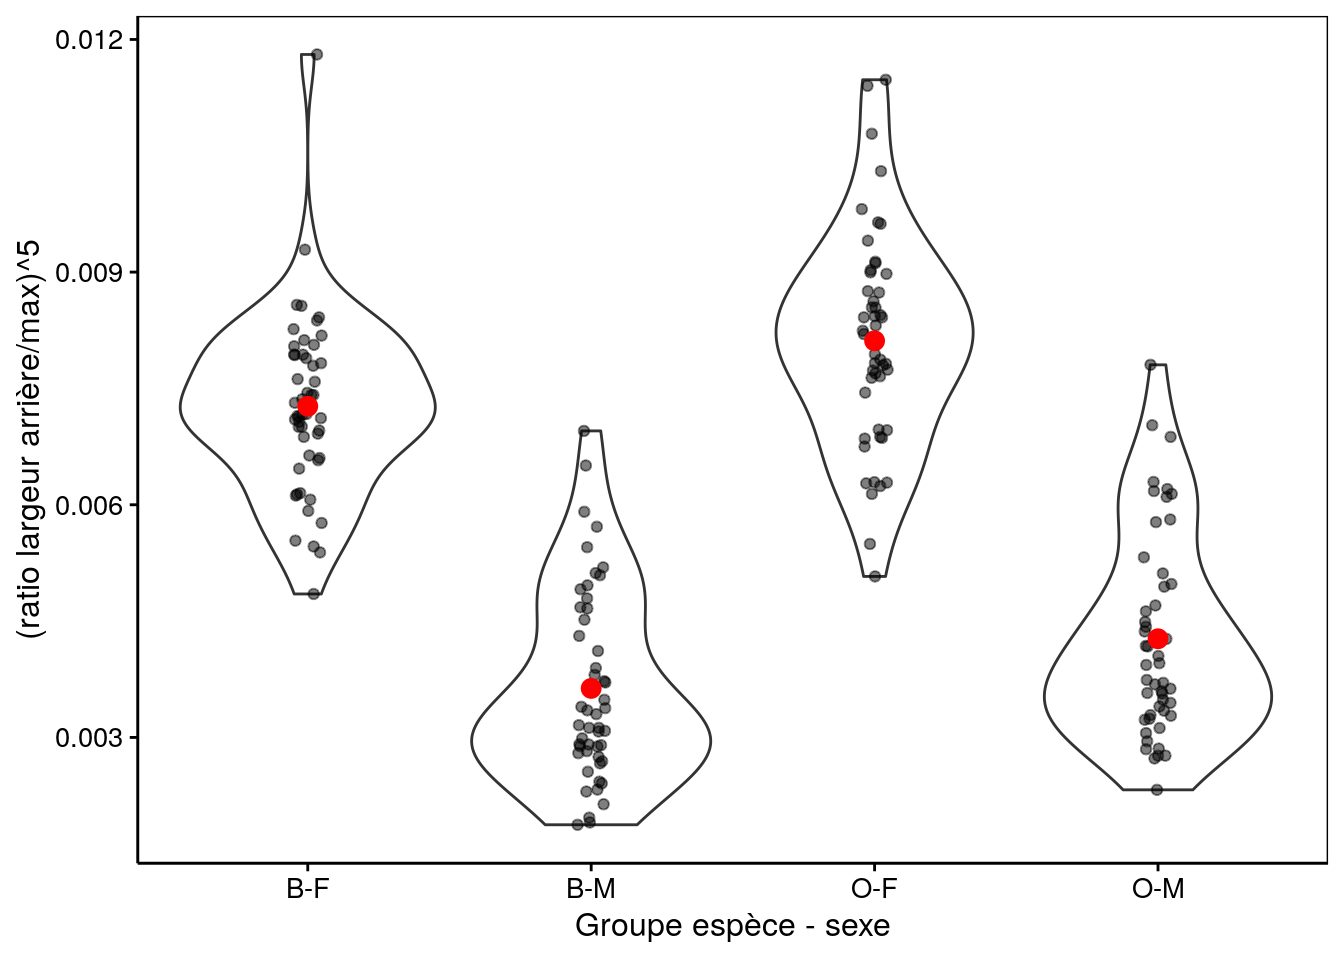 Transformation puissance cinq du ratio largeur arrière/largeur max en fonction du groupe de crabes *L. variegatus*.